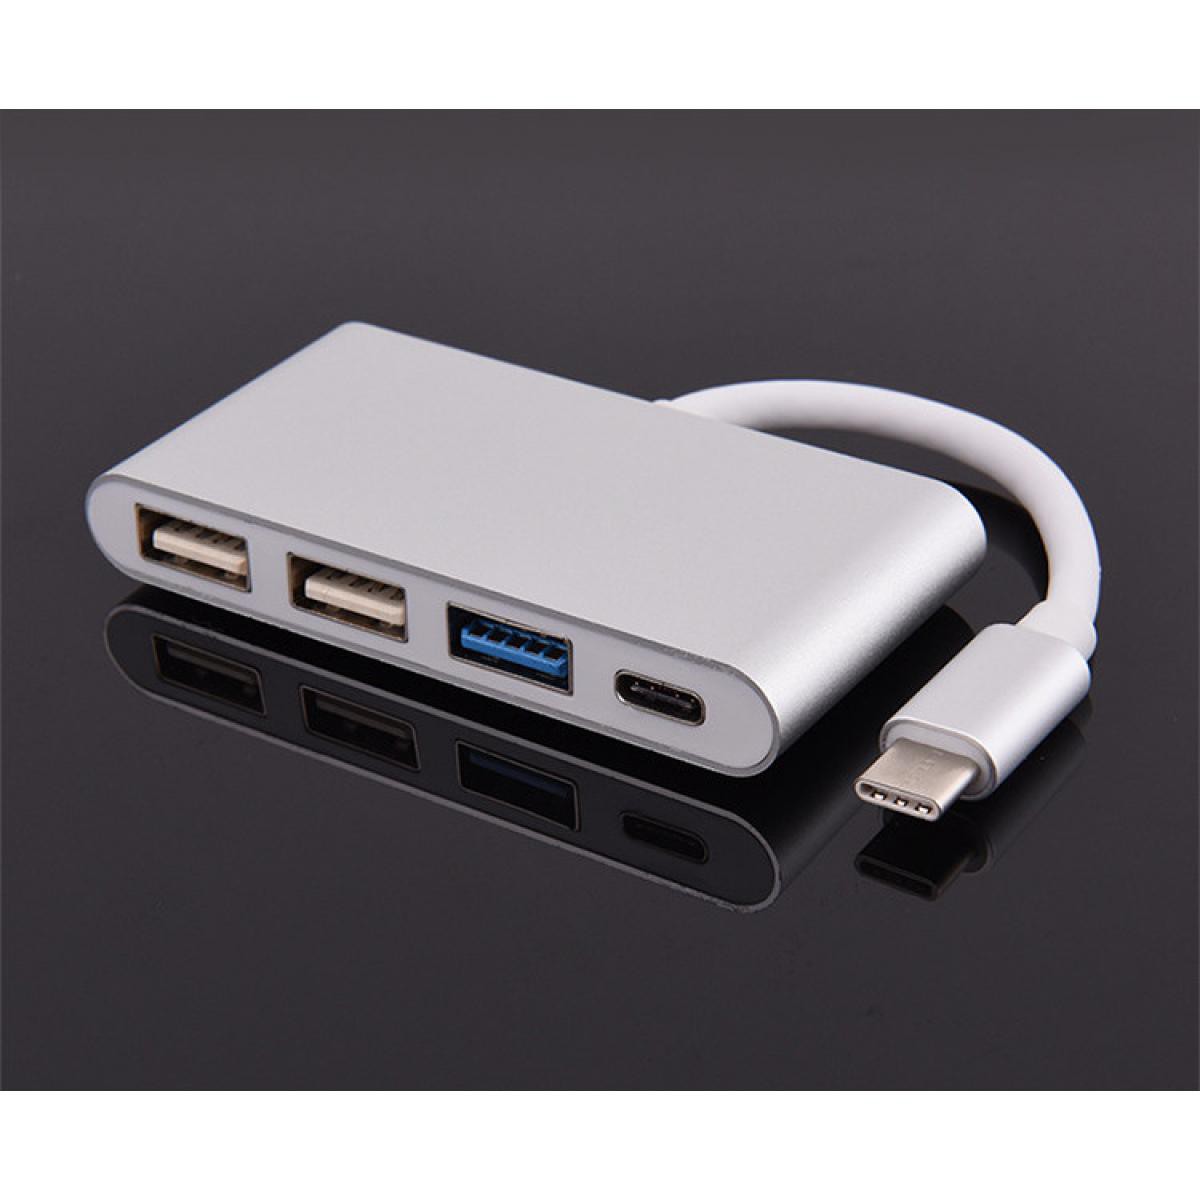 Shot - Multi Adaptateur 4 en 1 Type C pour MEIZU Pro 5 Smartphone Hub 2 ports USB 2.0 1 Port USB 3.0 (ARGENT) - Hub